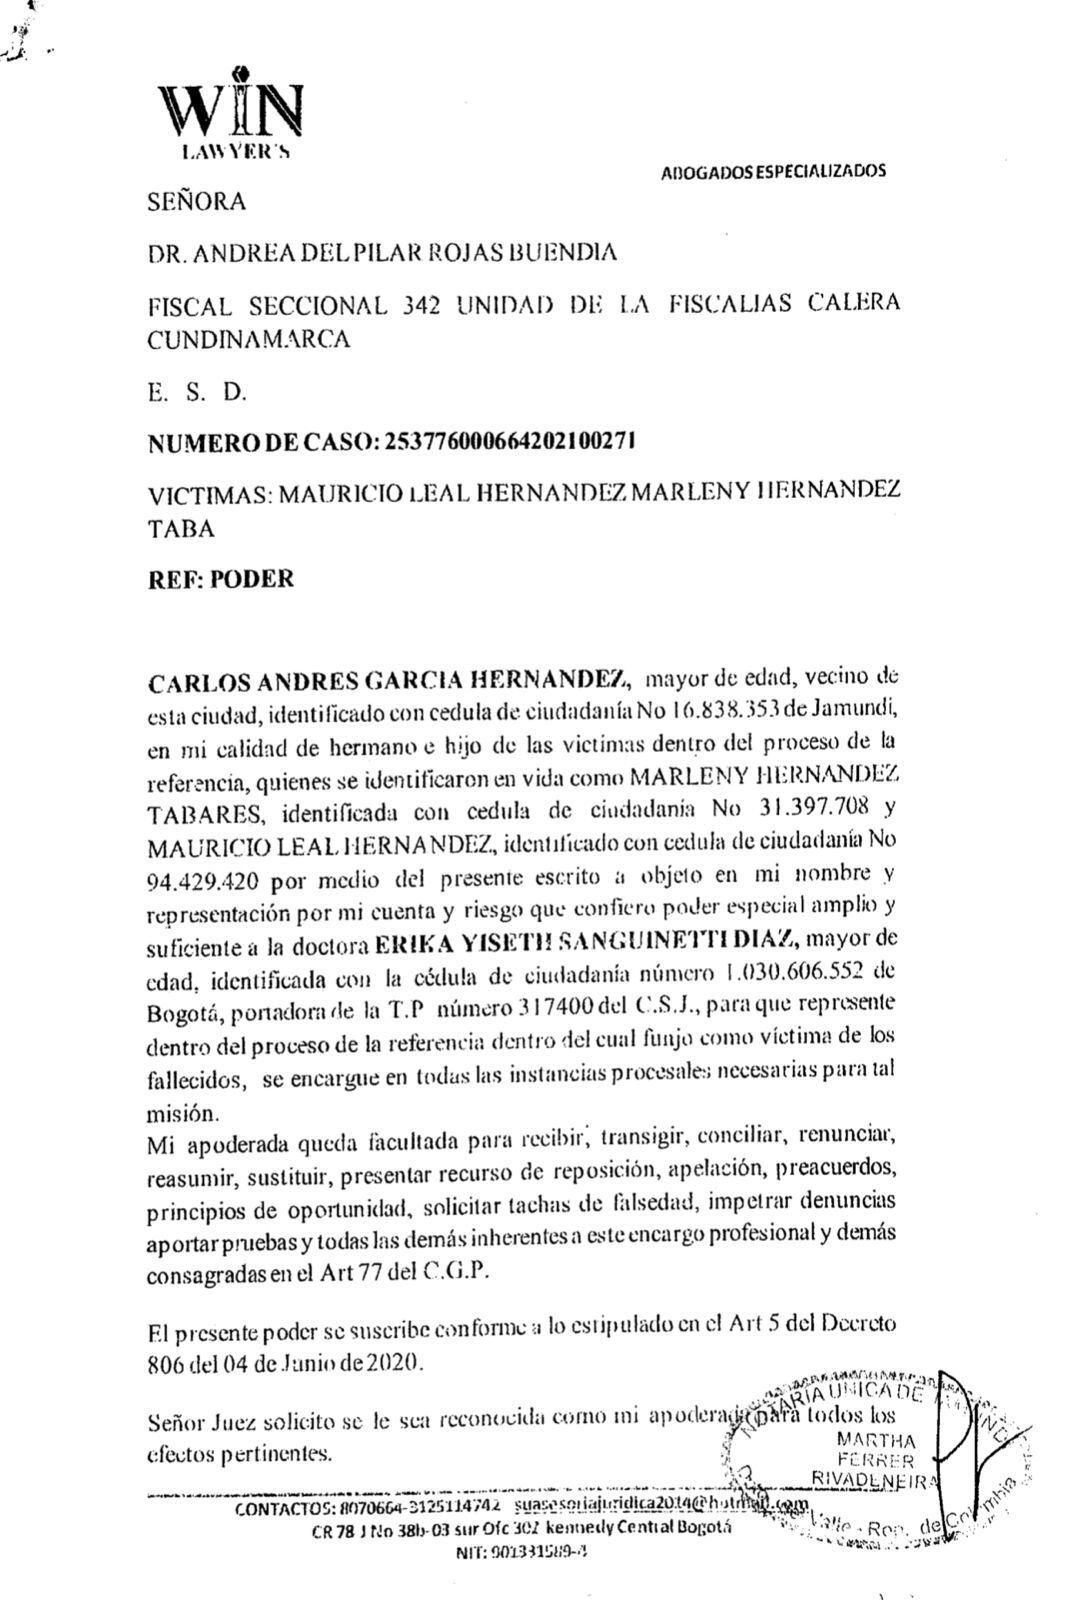 SEMANA conoció el documento que redactó la Fiscalía para fijar el acuerdo con Jhonier Leal, asesino de Mauricio Leal y Marleny Hernández.